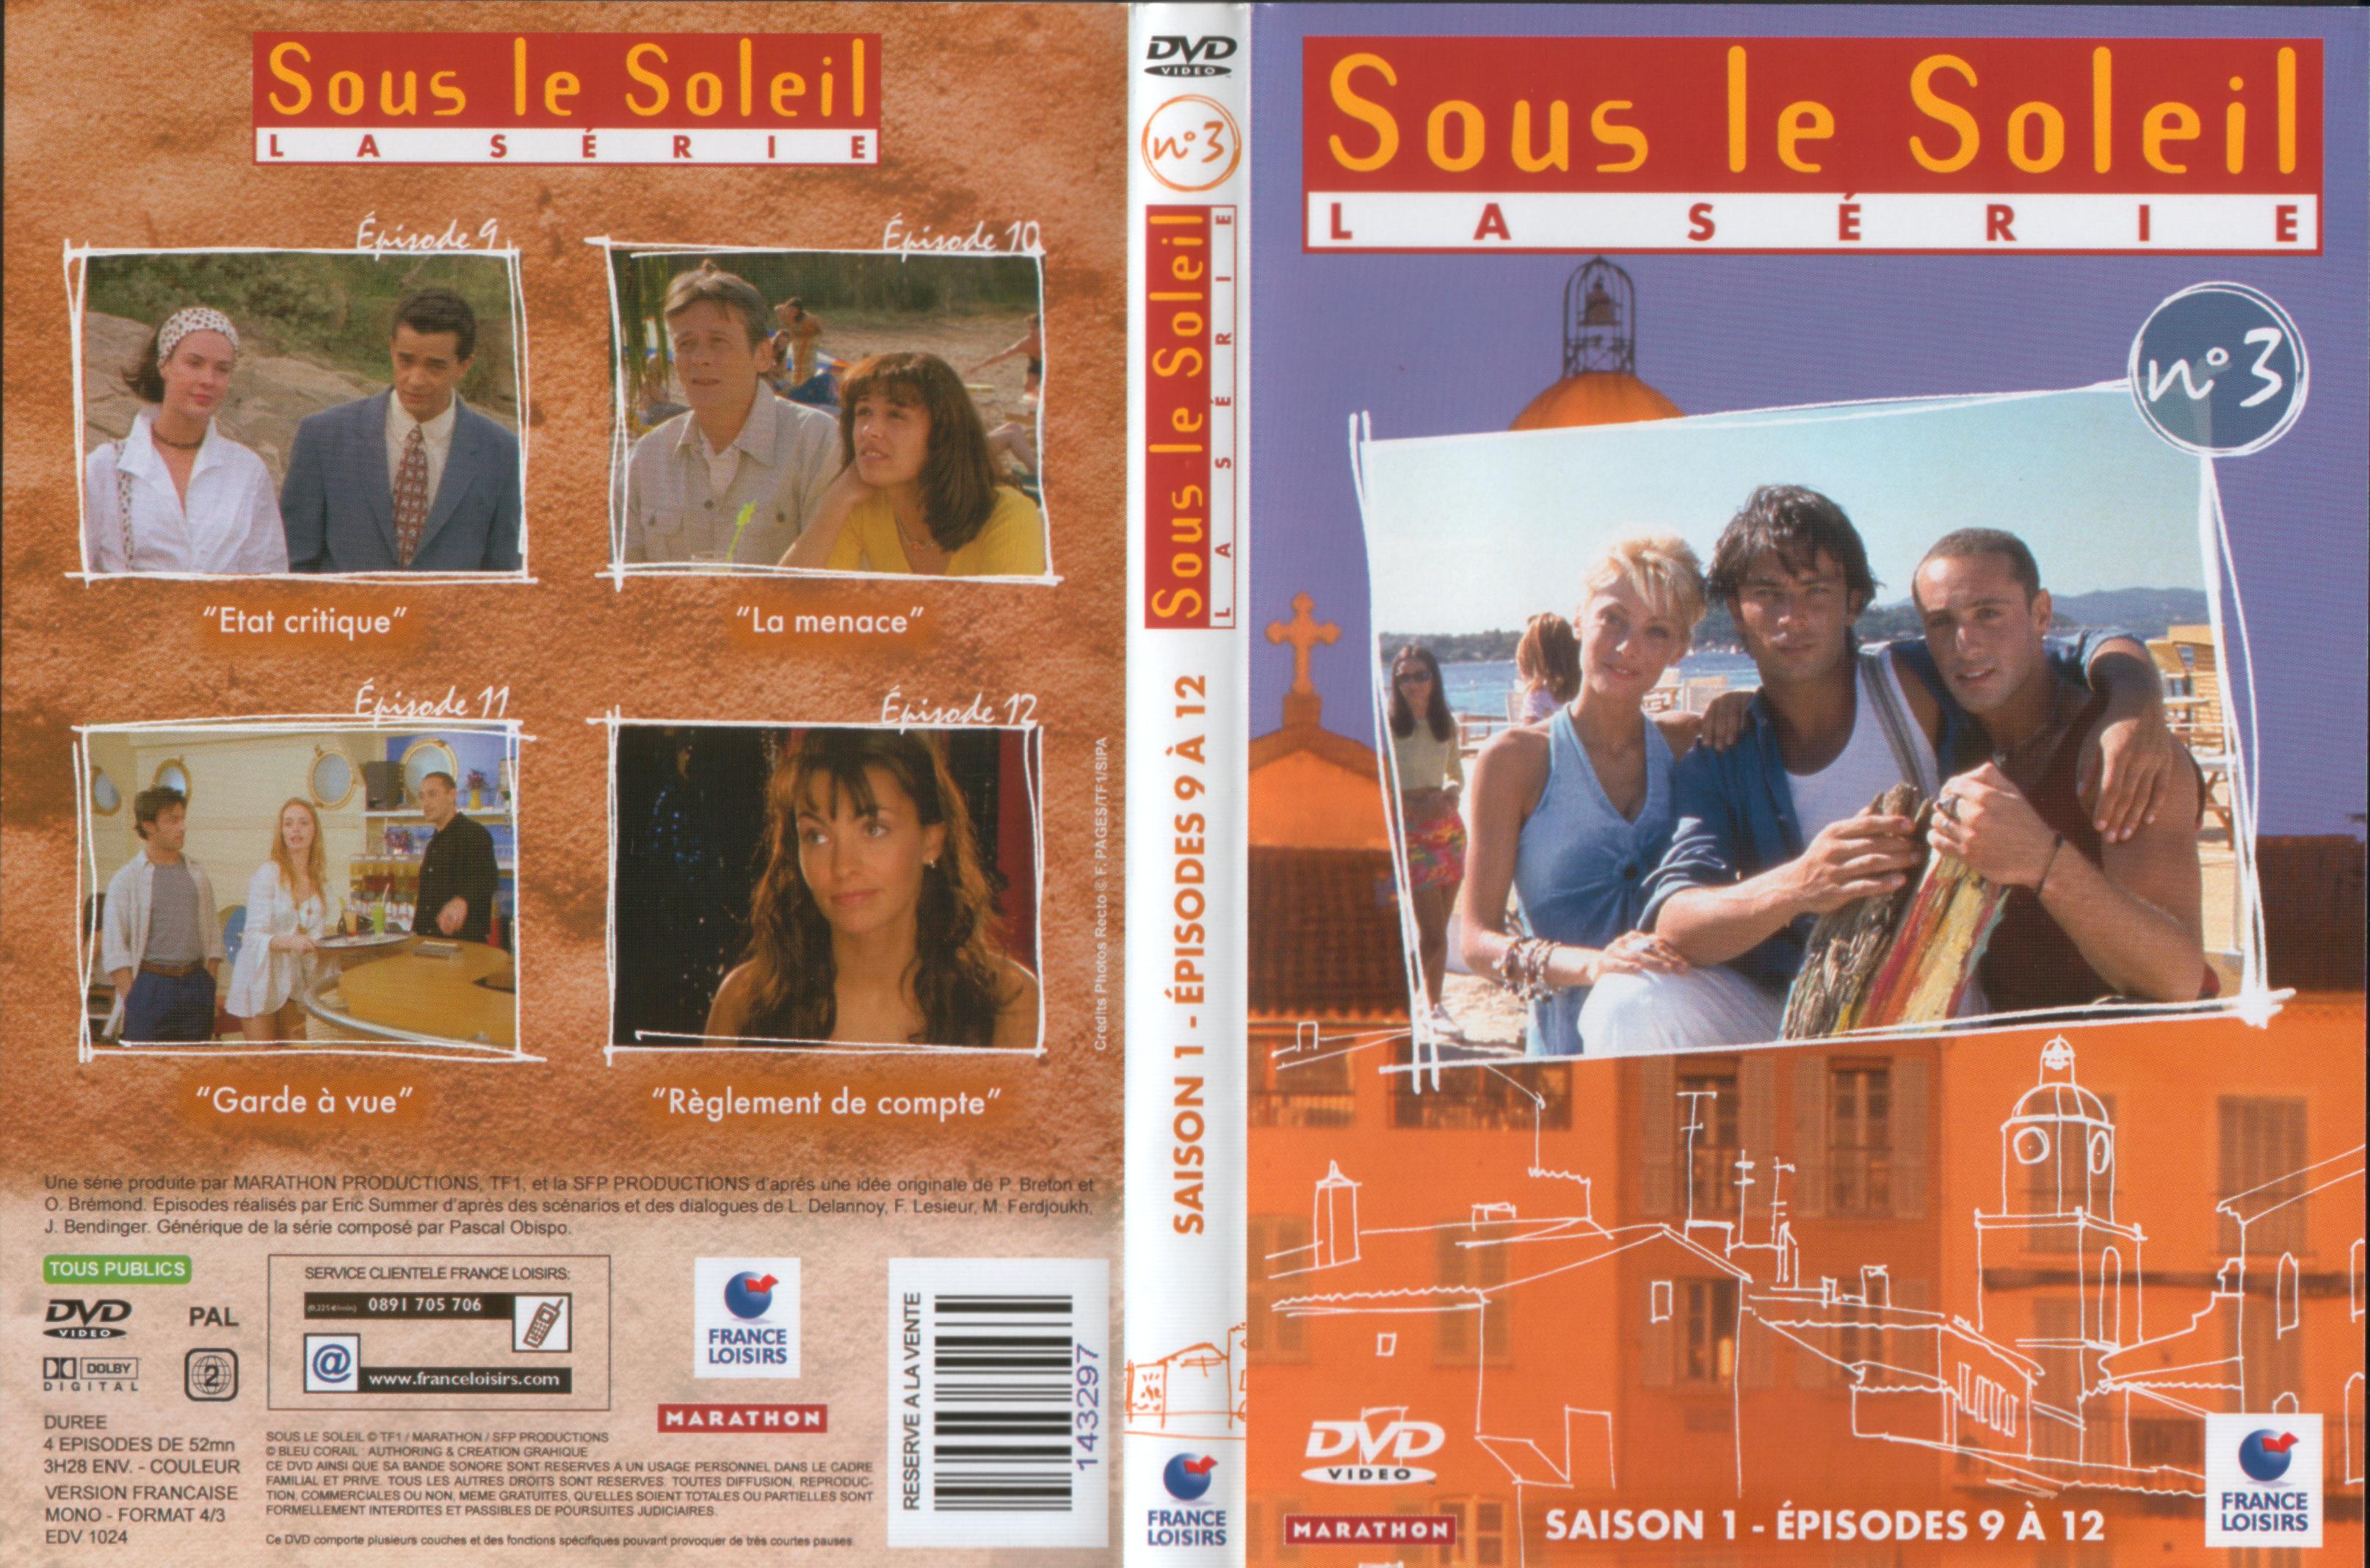 Jaquette DVD Sous le soleil saison 1 vol 3